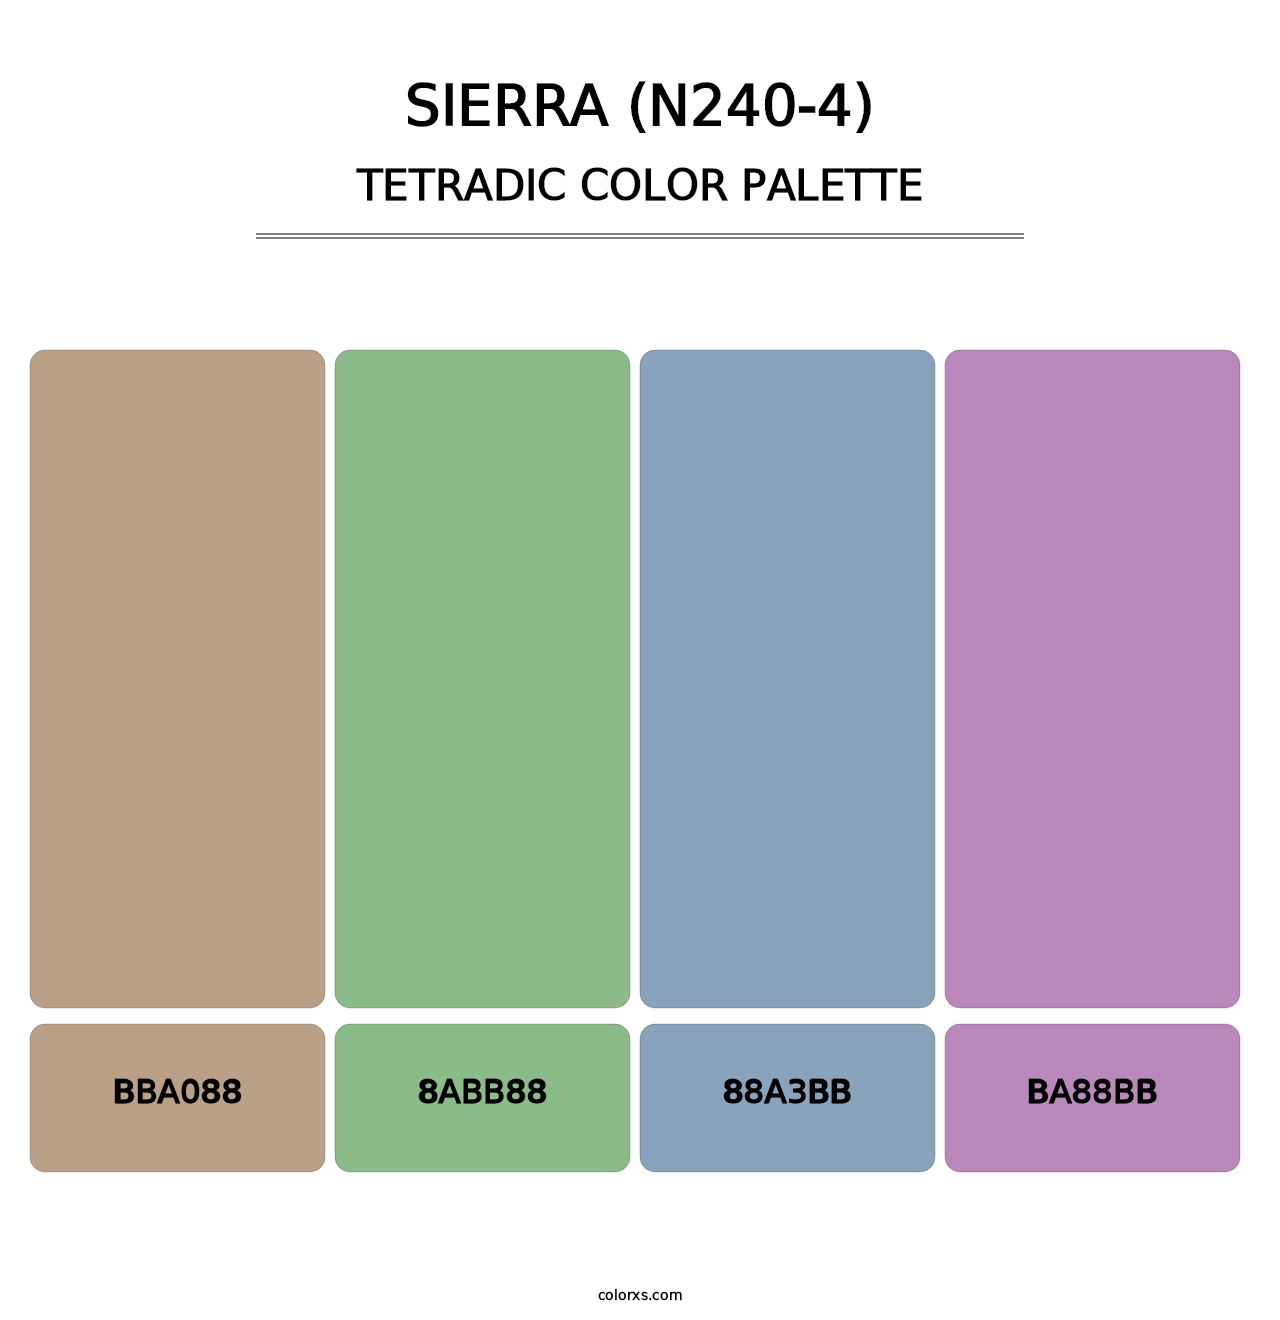 Sierra (N240-4) - Tetradic Color Palette